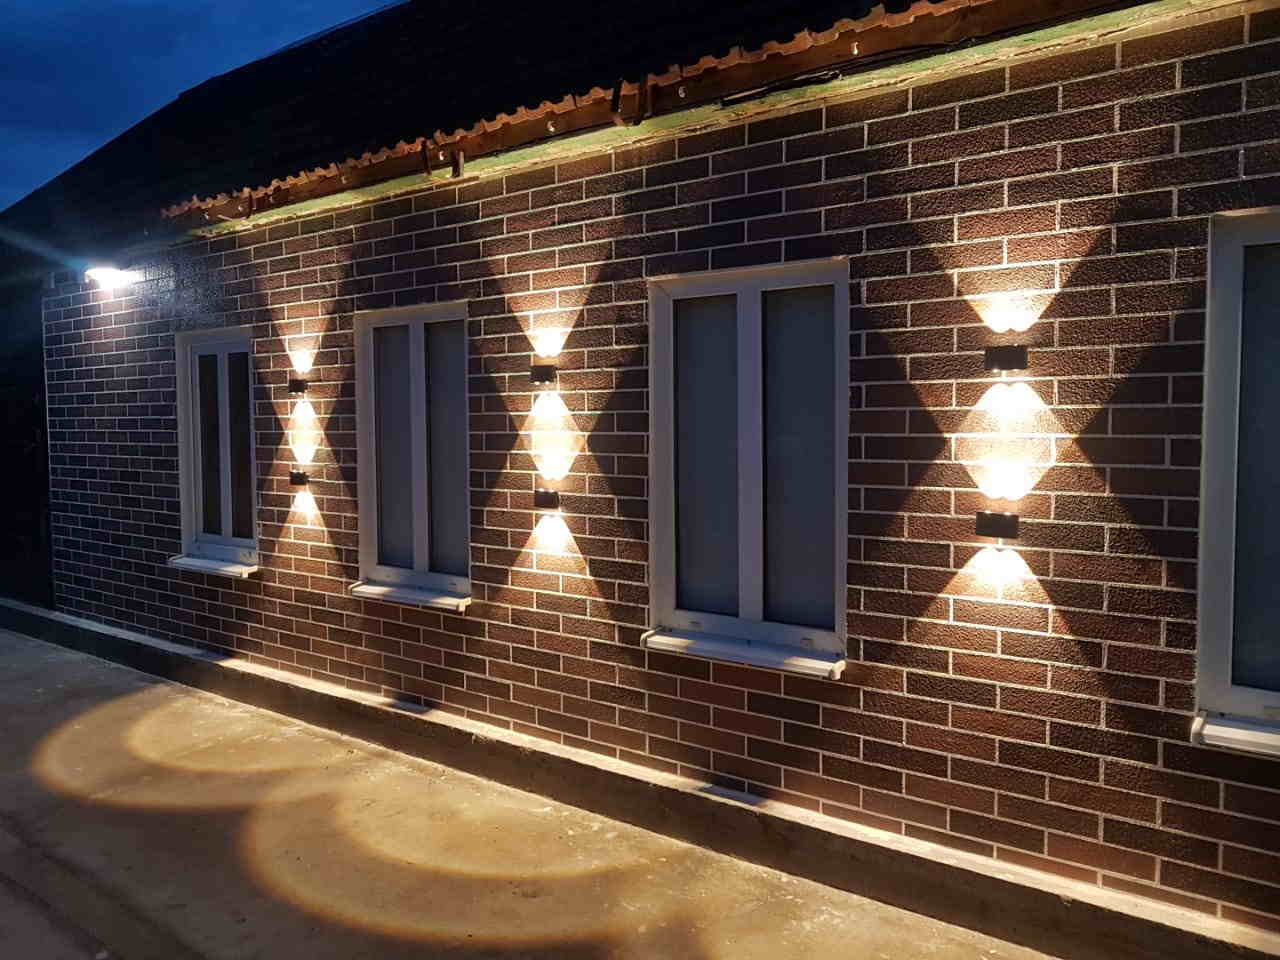 Kərpiclərin kombinasiyası ilə hazırlanmış evin fasad dizaynı